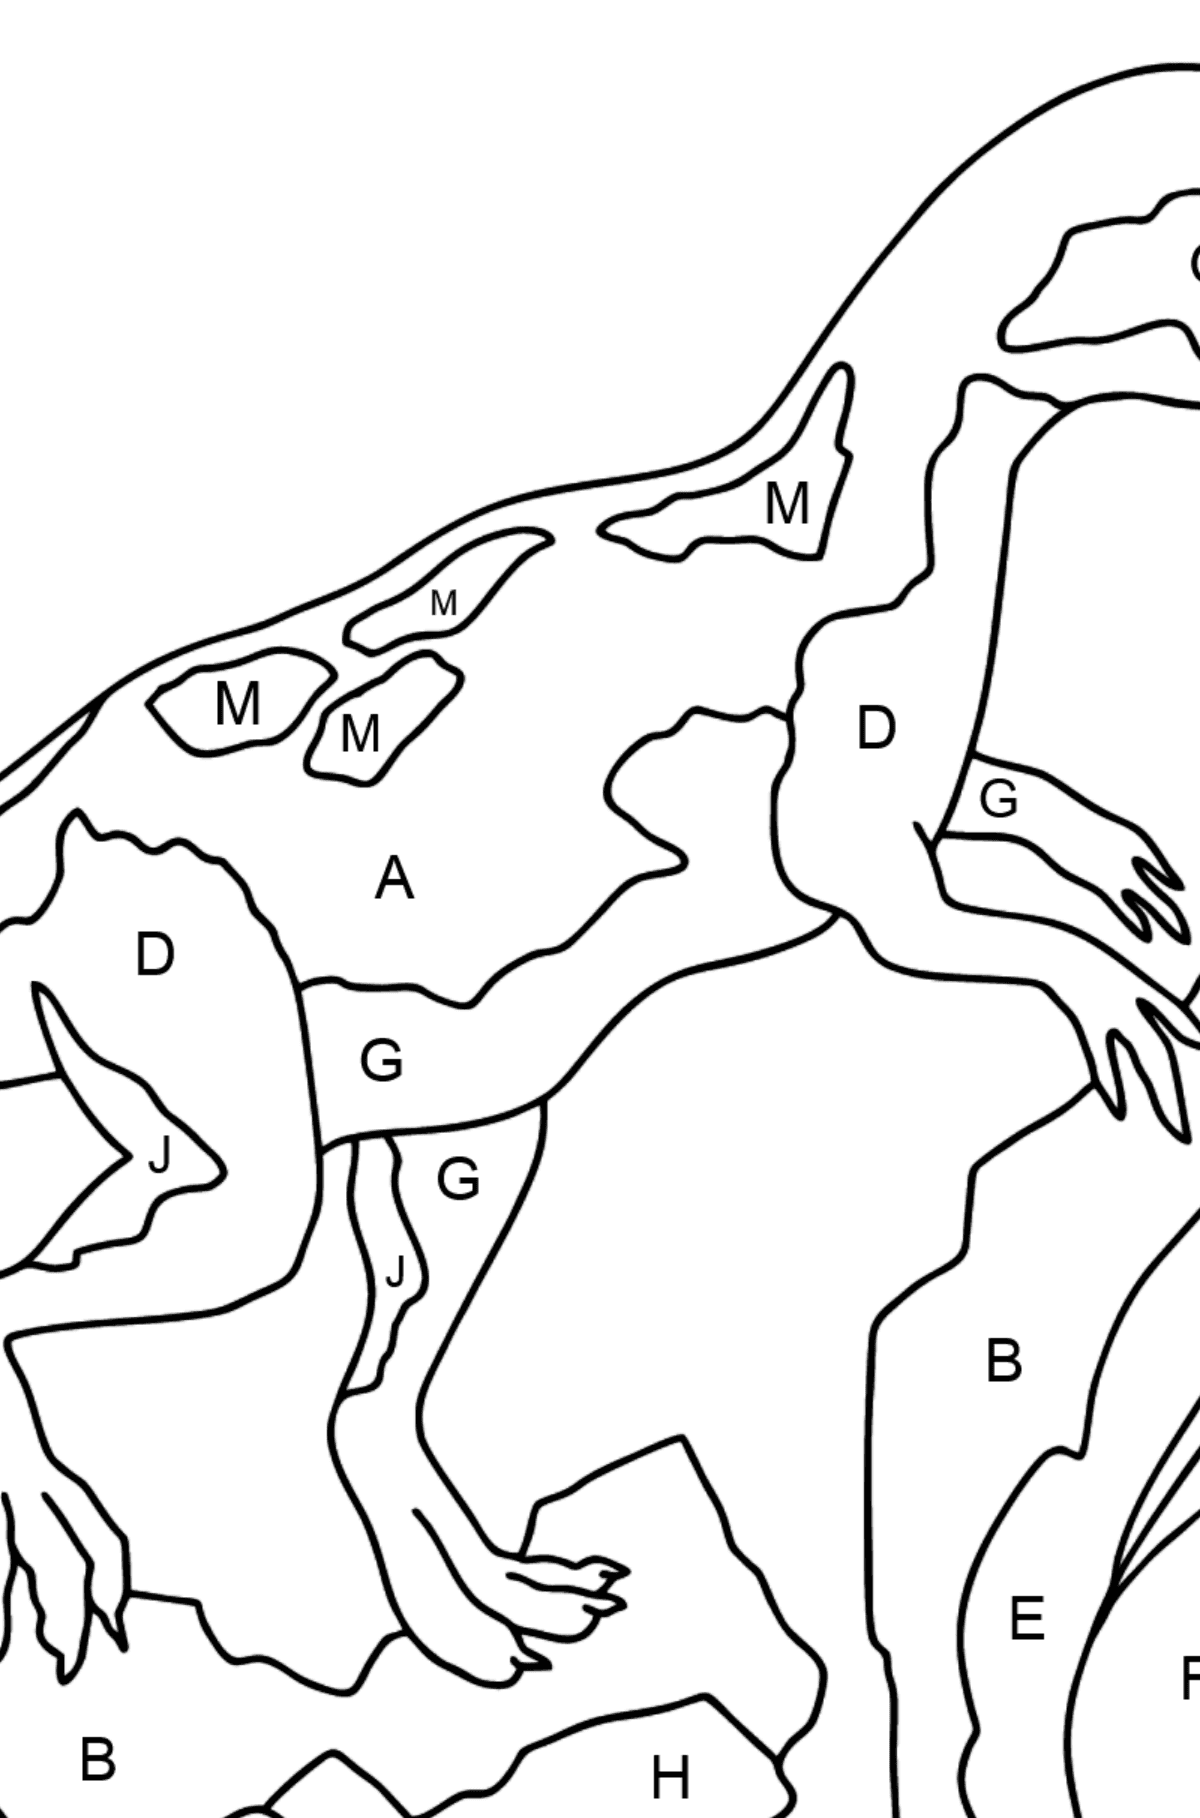 Desenho para colorir de Dinossauro Jurássico (difícil) - Colorir por Letras para Crianças